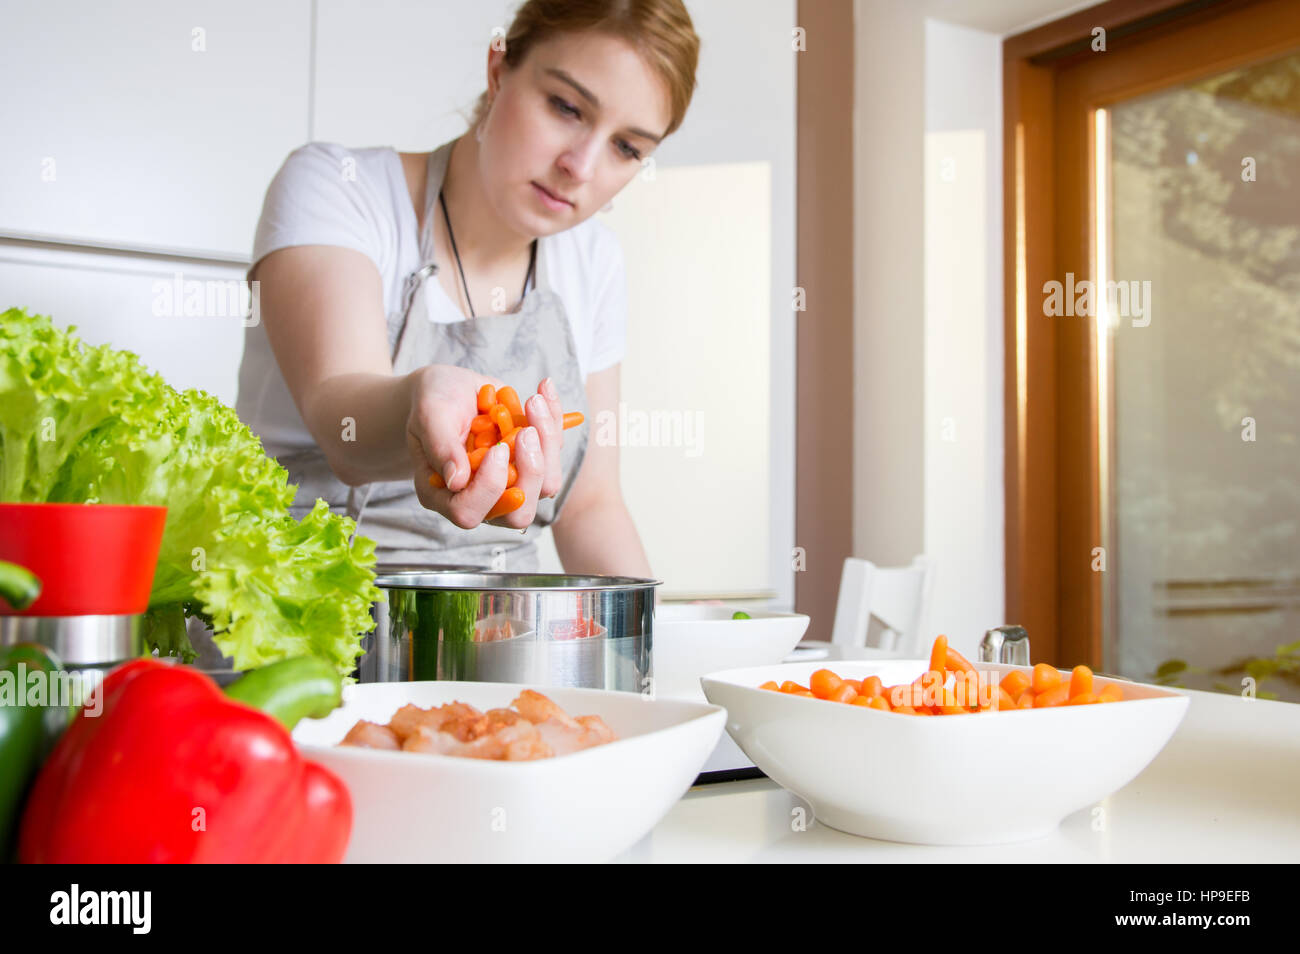 Donna usa le carote per preparare un pasto. Il concepimento di una sana alimentazione. Foto Stock